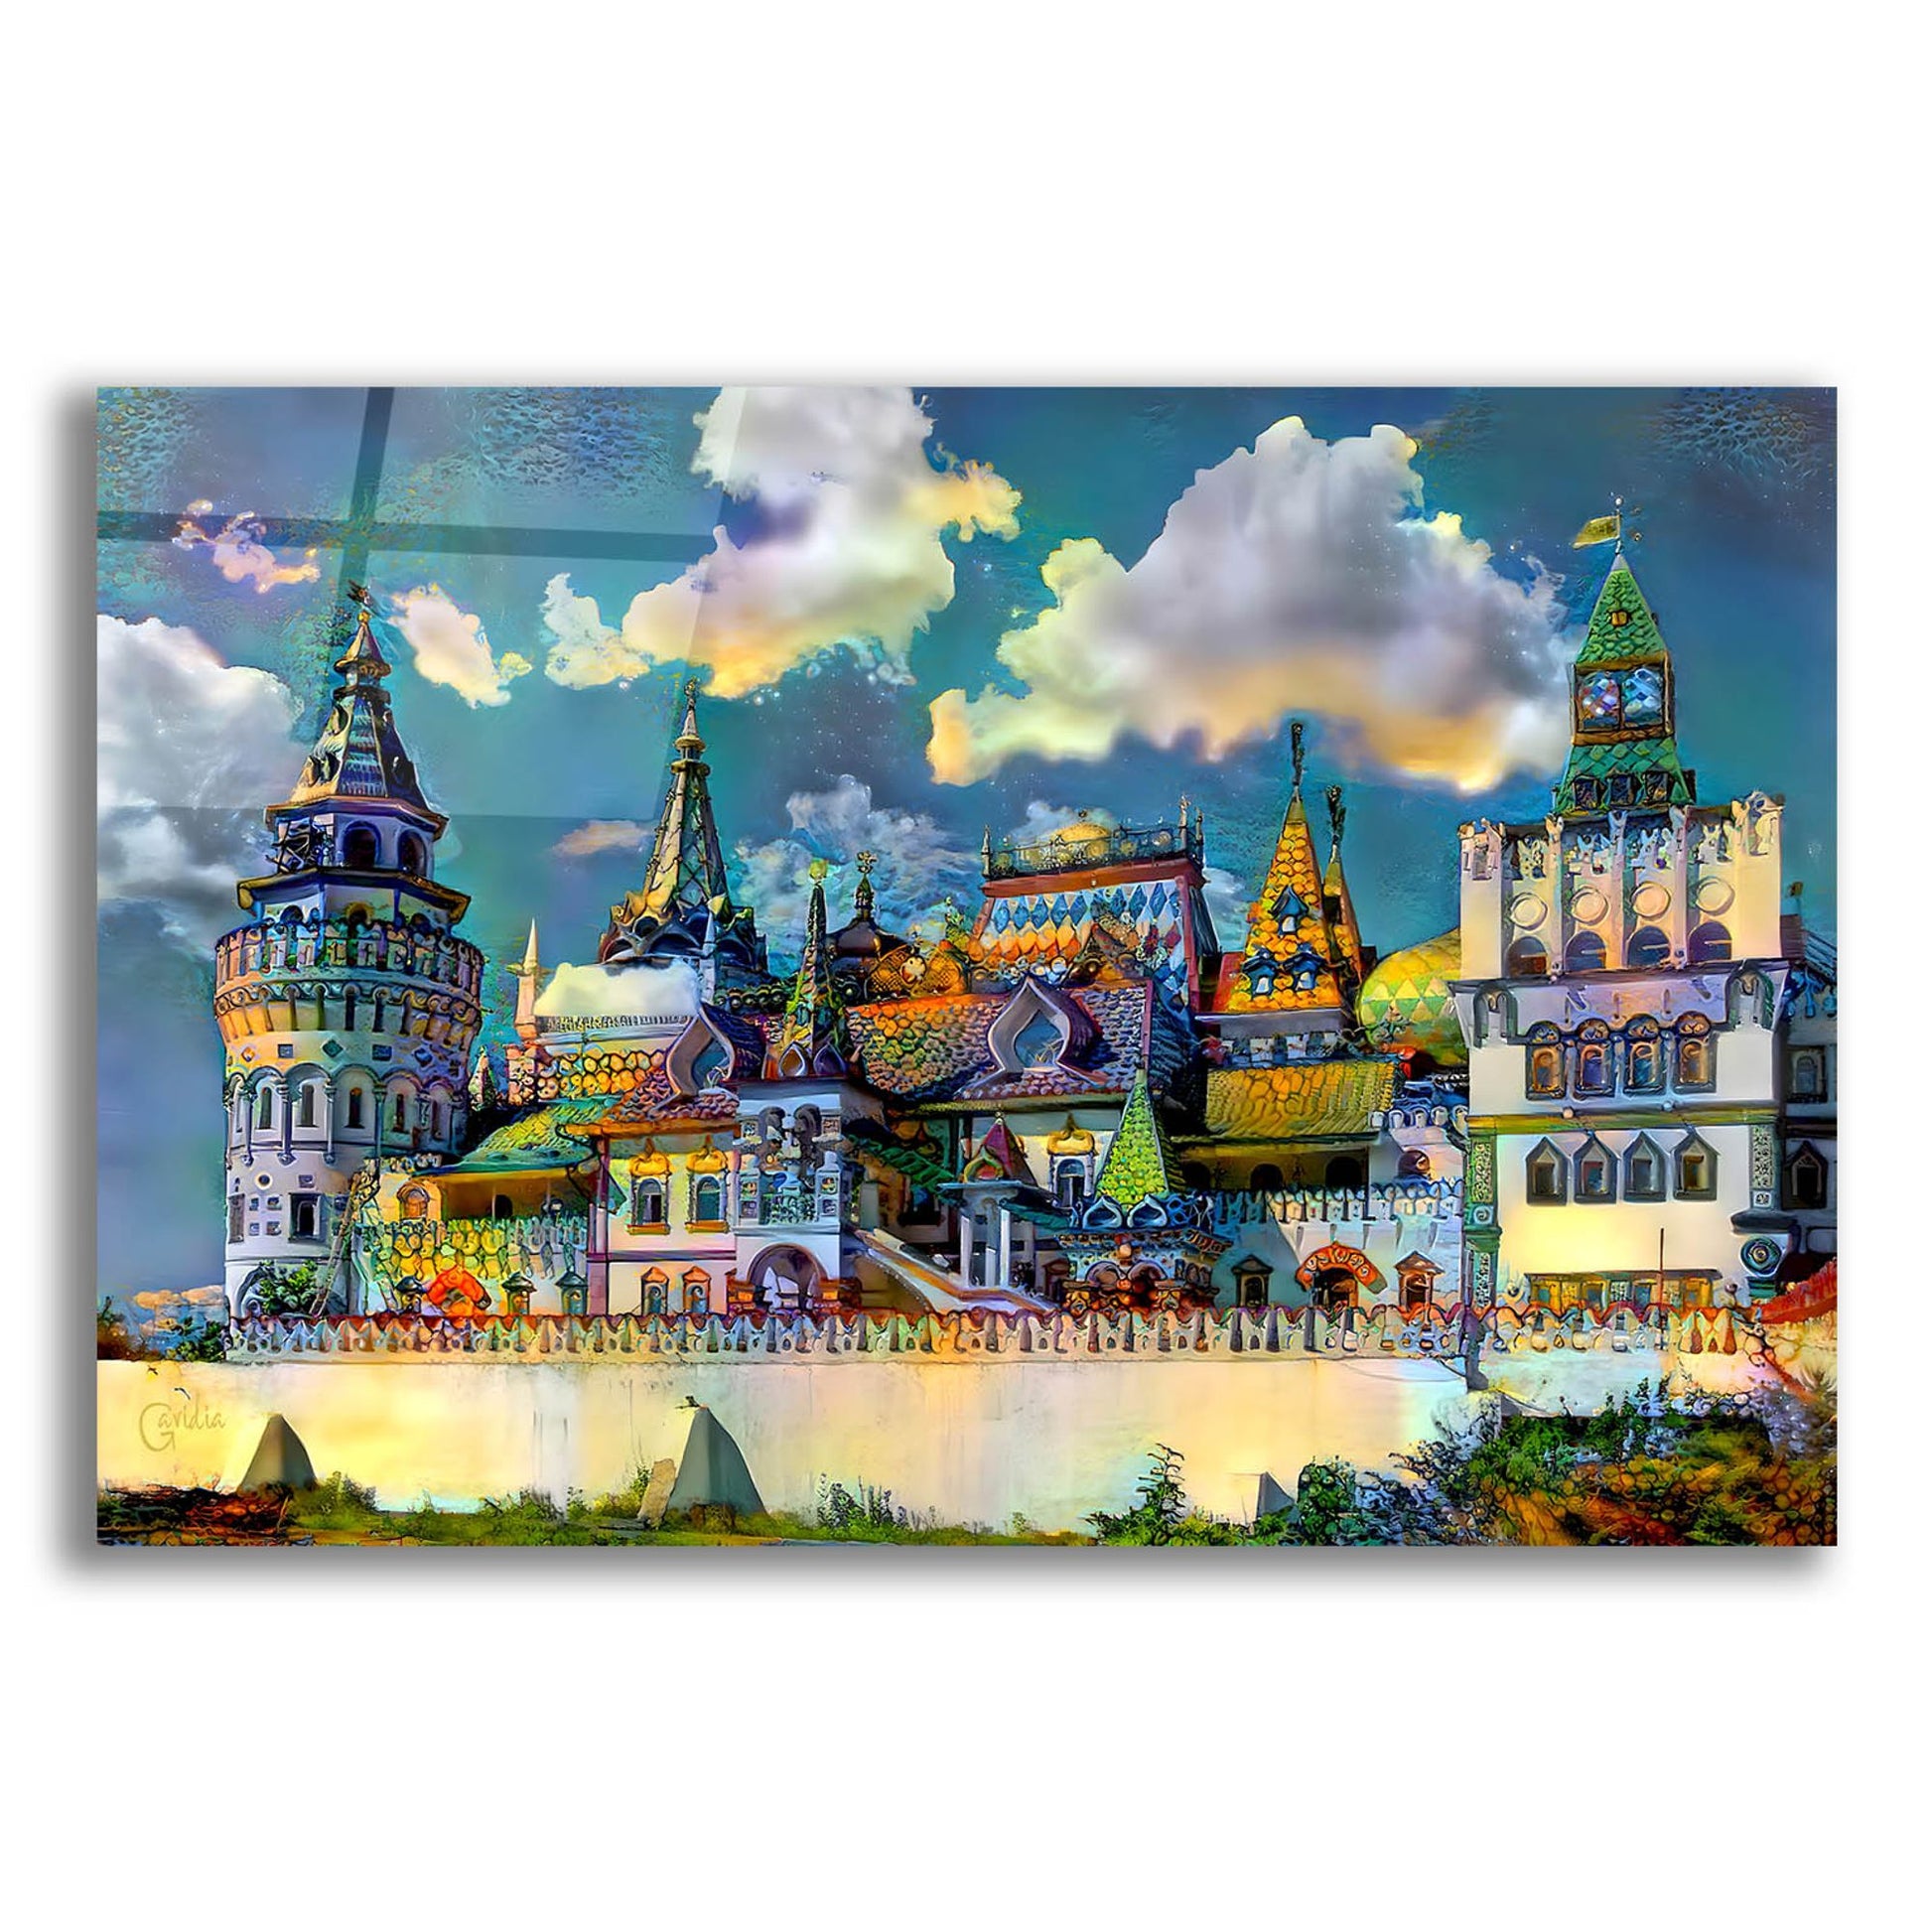 Epic Art 'Moscow Russia Izmailovsky Market' by Pedro Gavidia, Acrylic Glass Wall Art,24x16